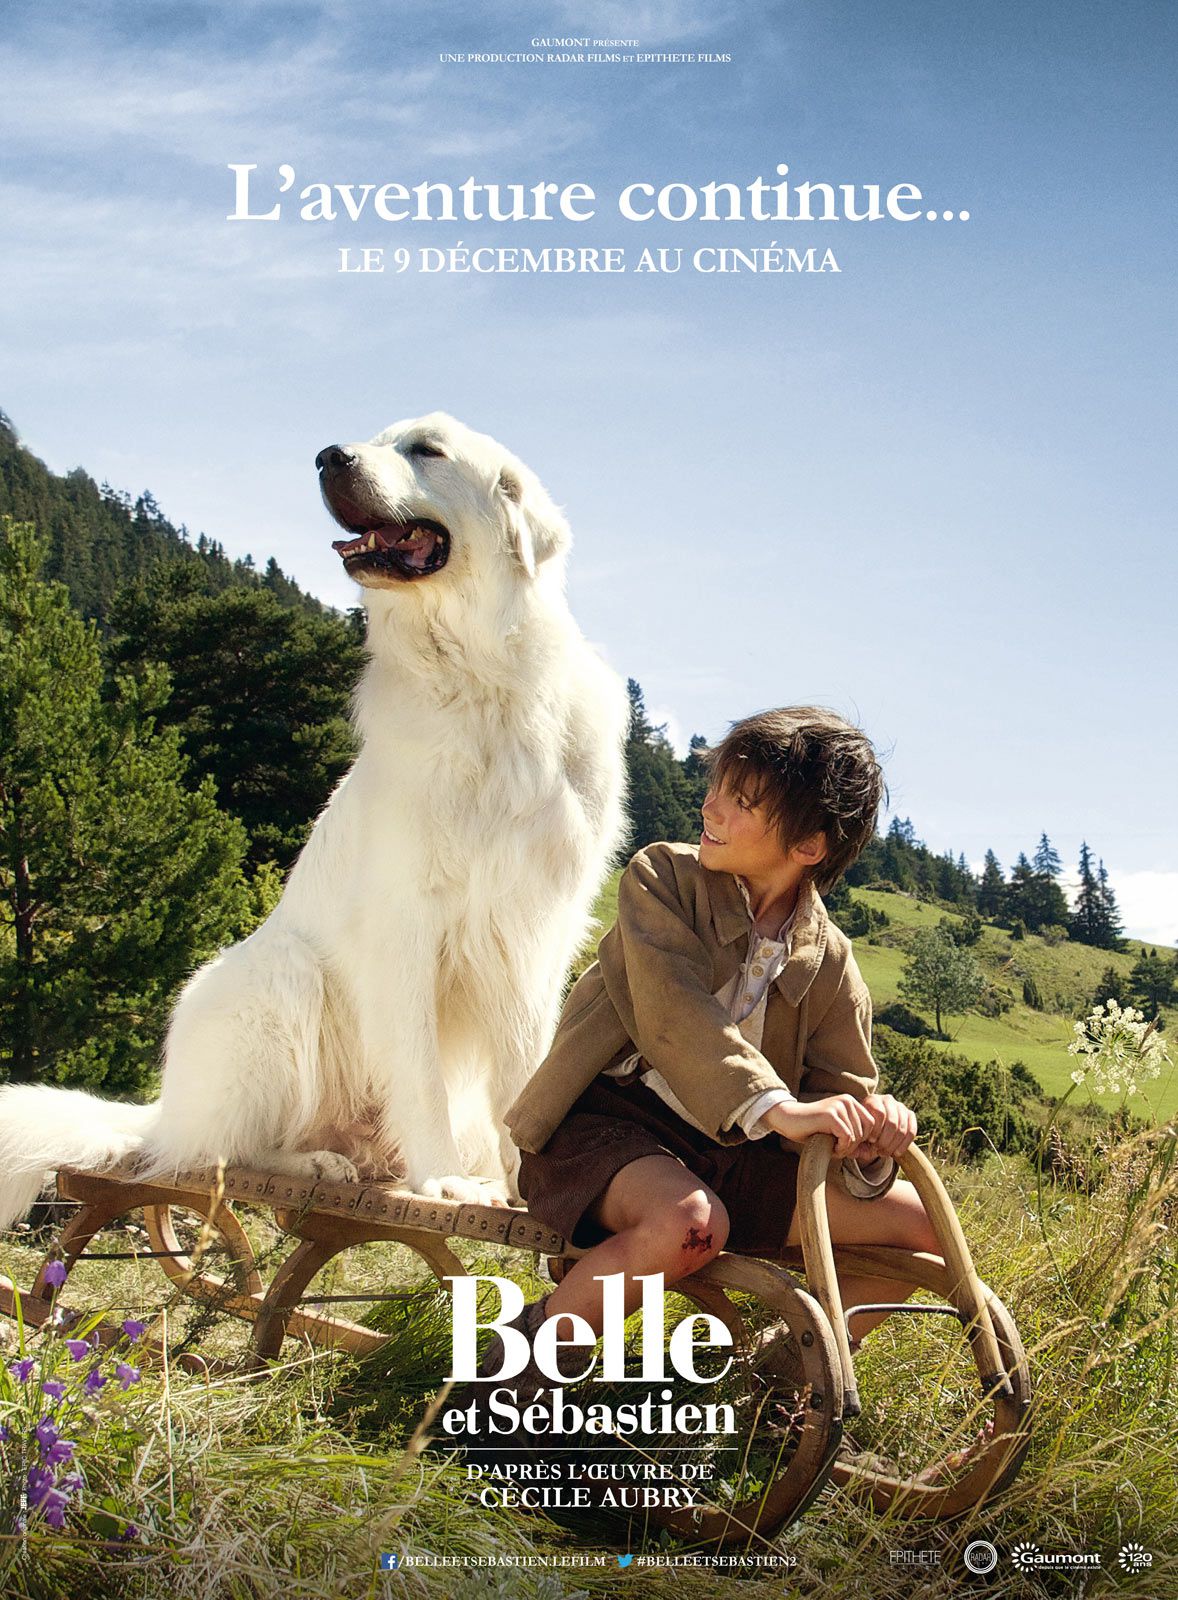 Belle et Sébastien : L'aventure continue... - Film (2015) streaming VF gratuit complet